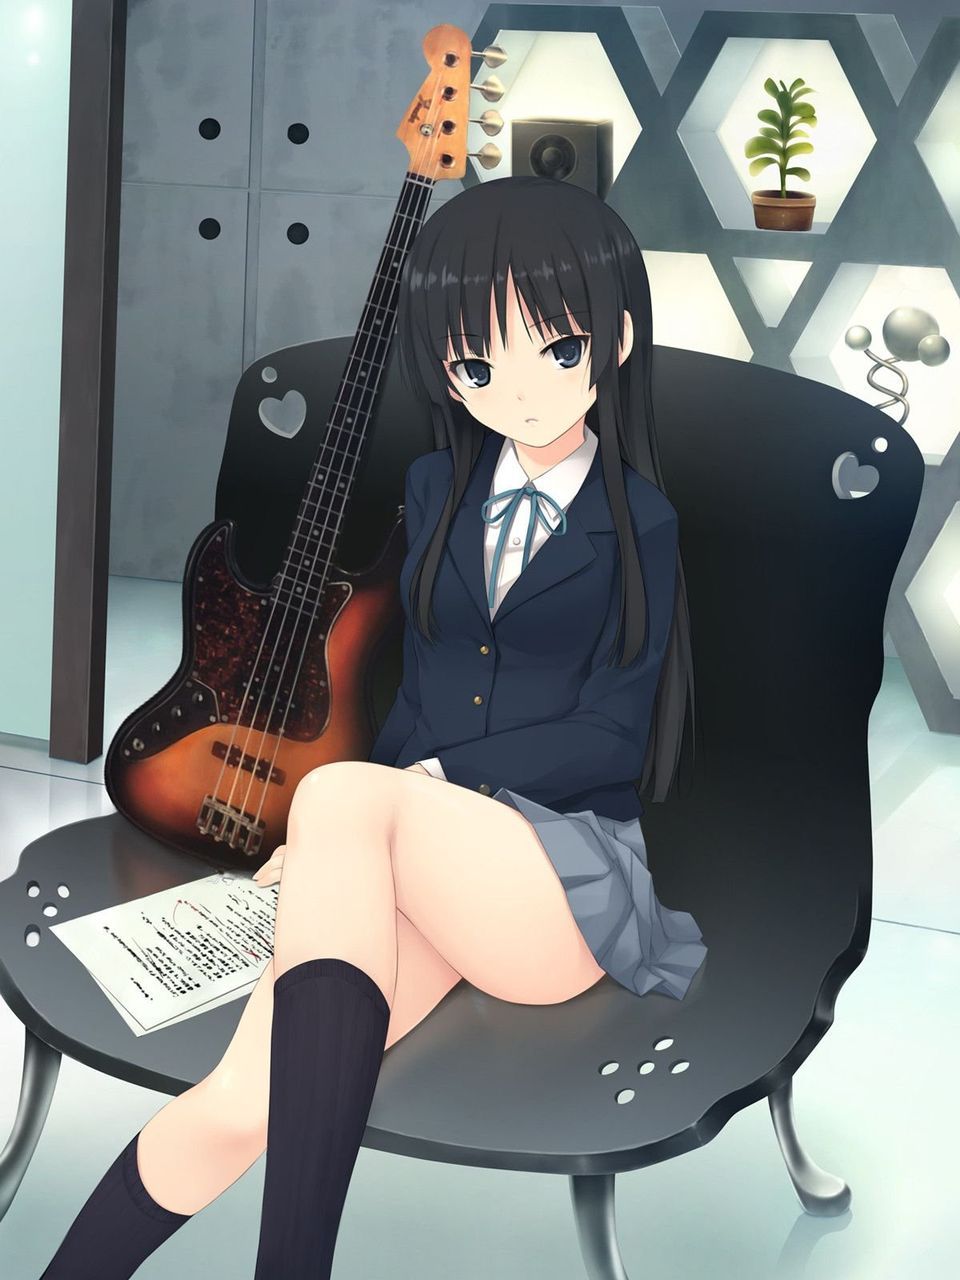 [2次] second images of pretty girls with musical instruments [non-hentai] 23